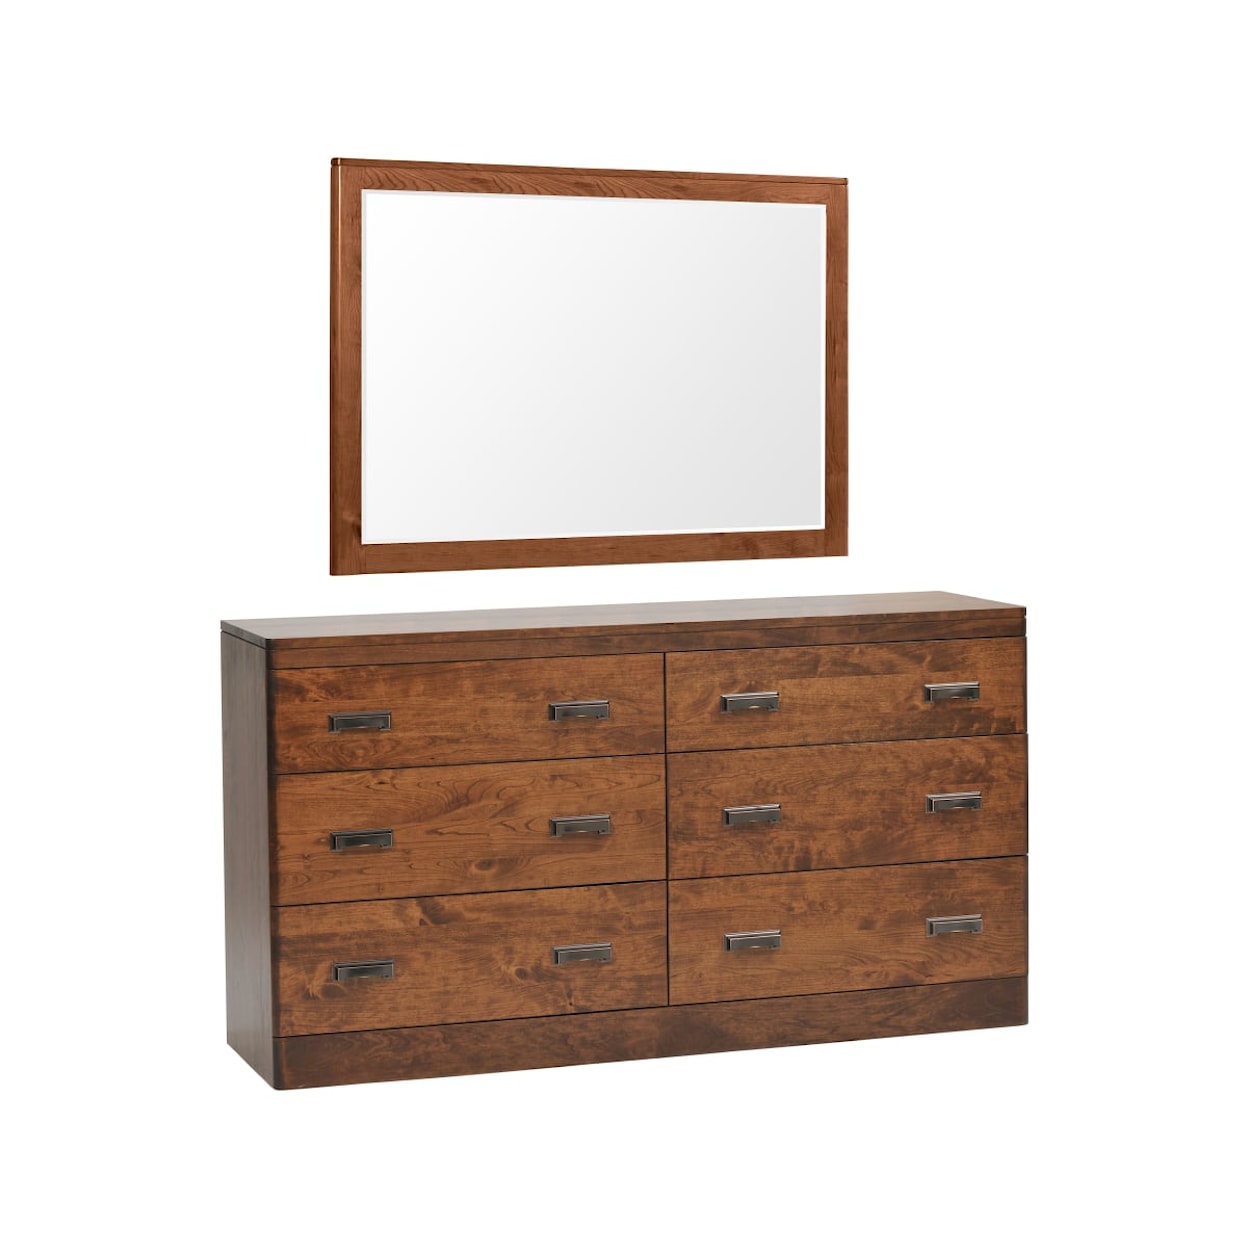 Millcraft Crossan 6-Drawer Dresser with 1" Bevel Mirror